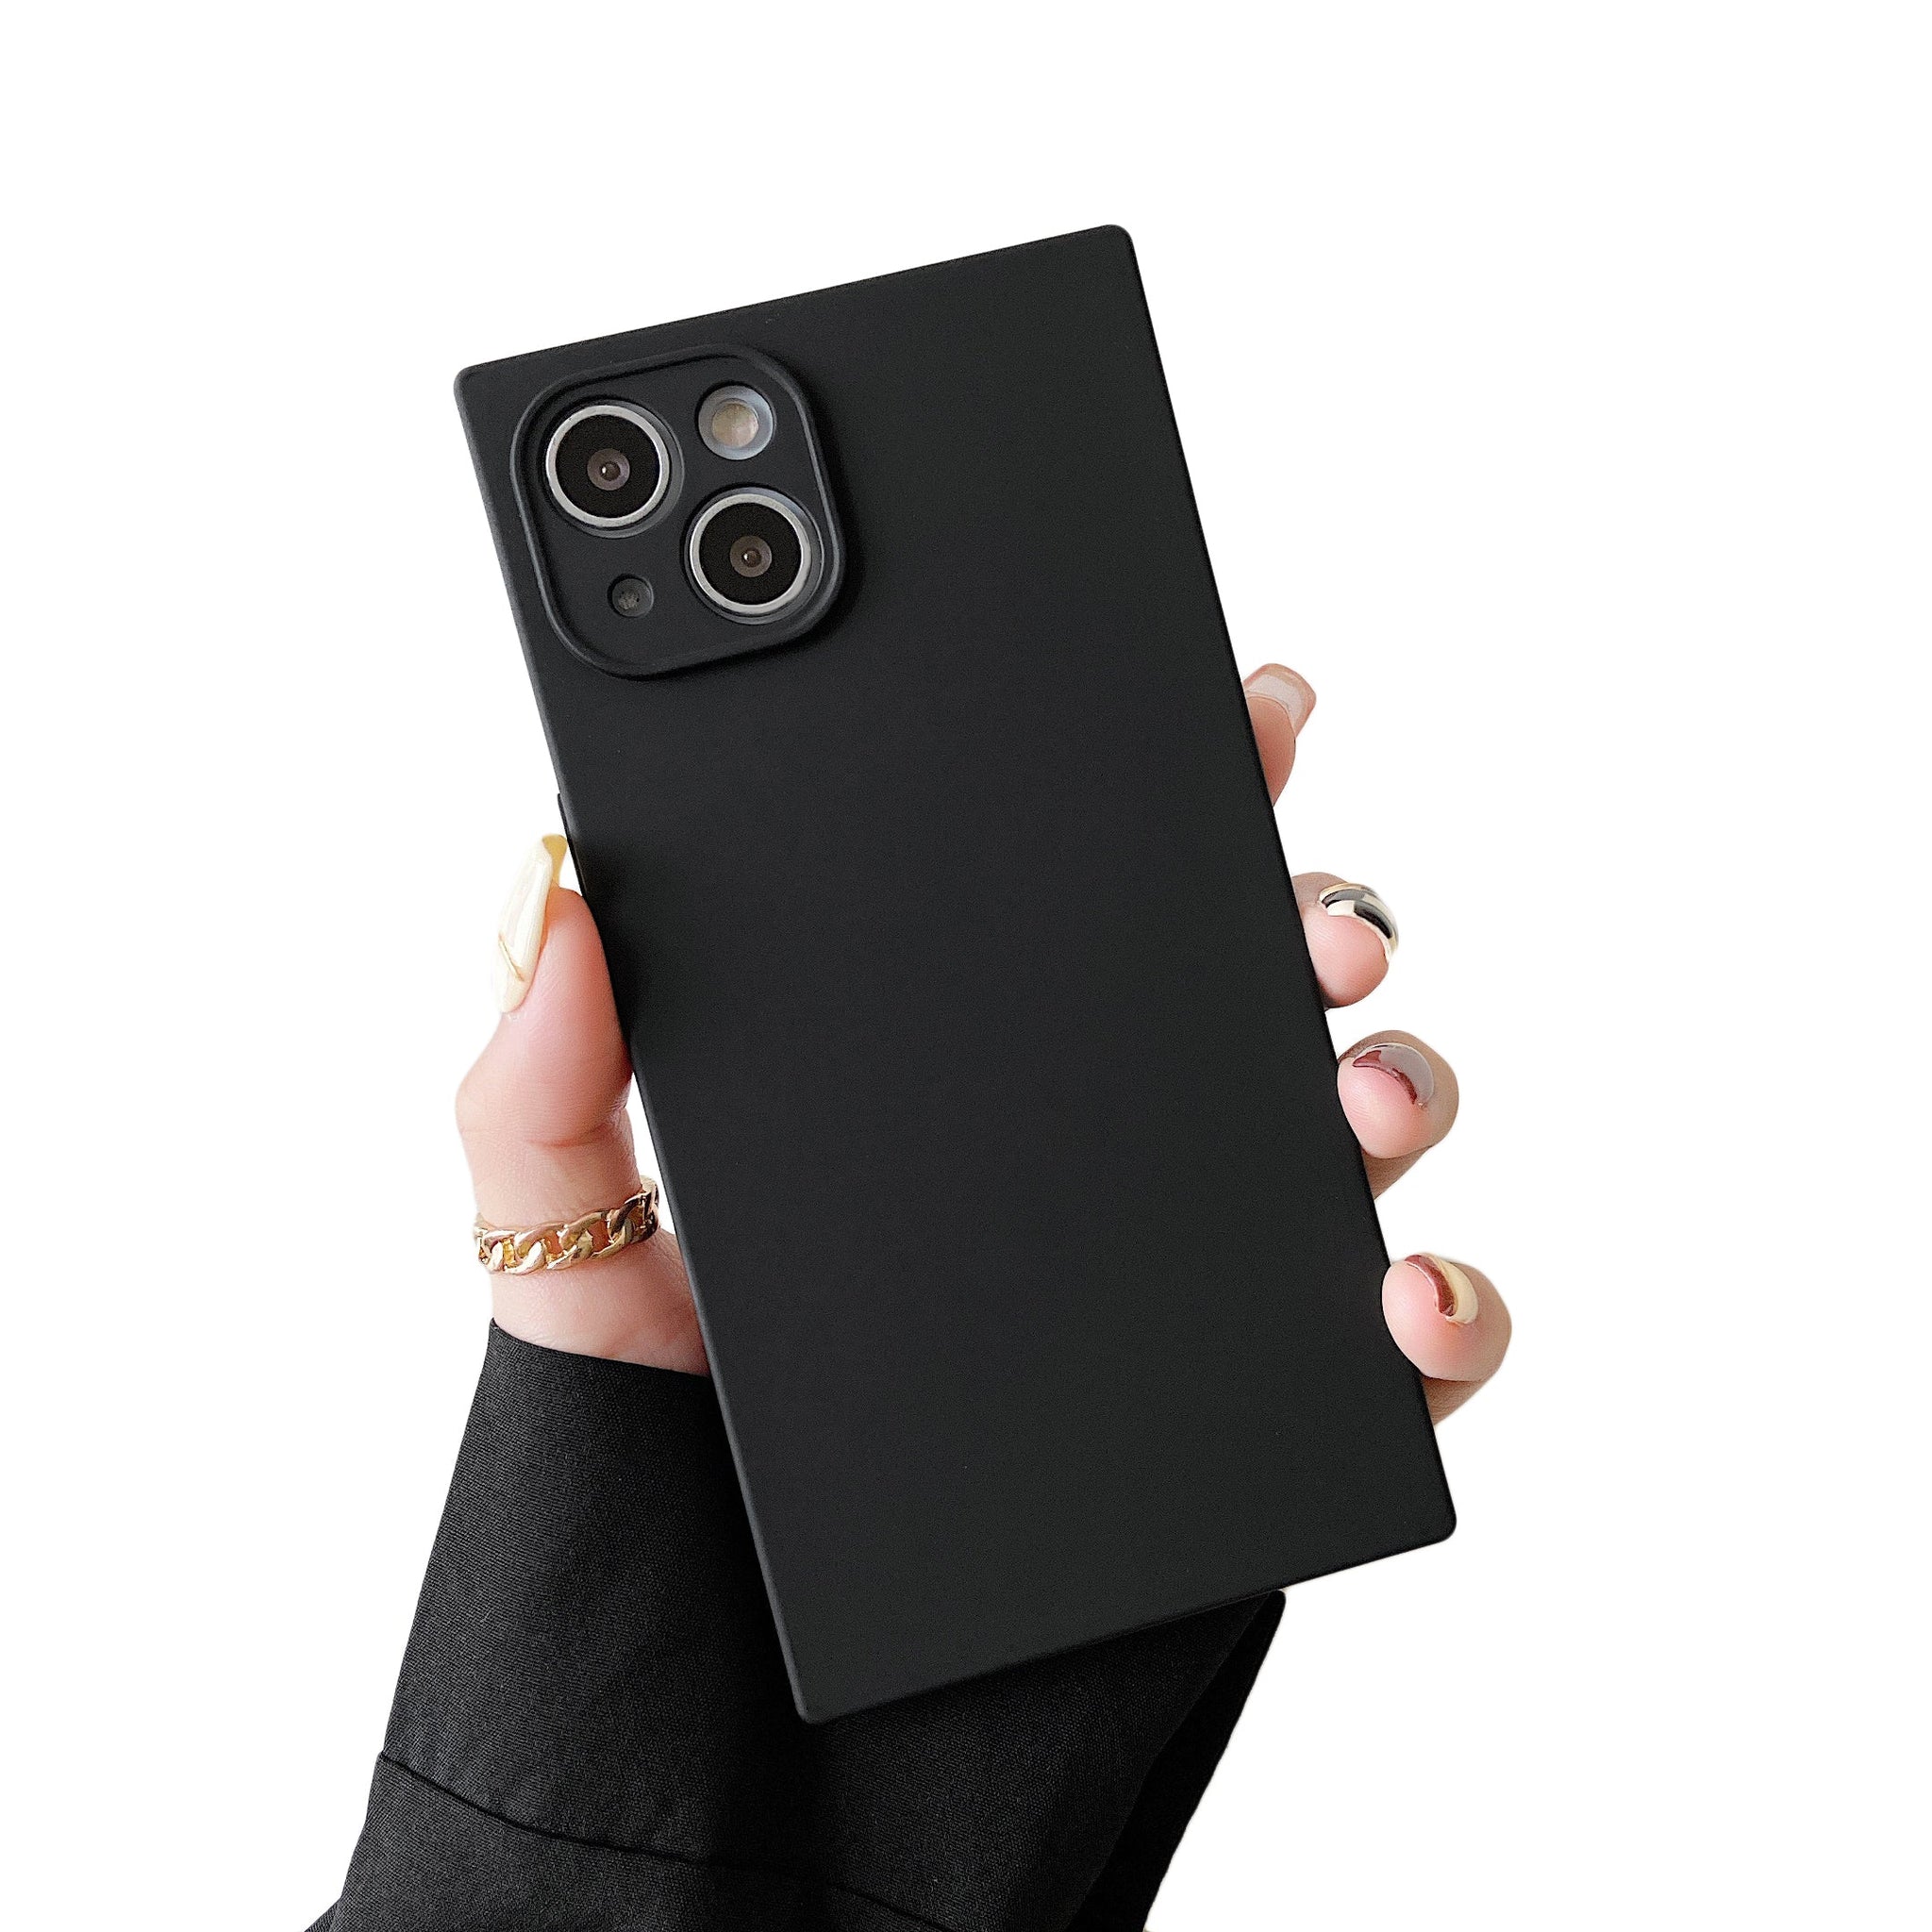 iPhone 12 Pro Max Case Square Silicone Camera Protector (Black)